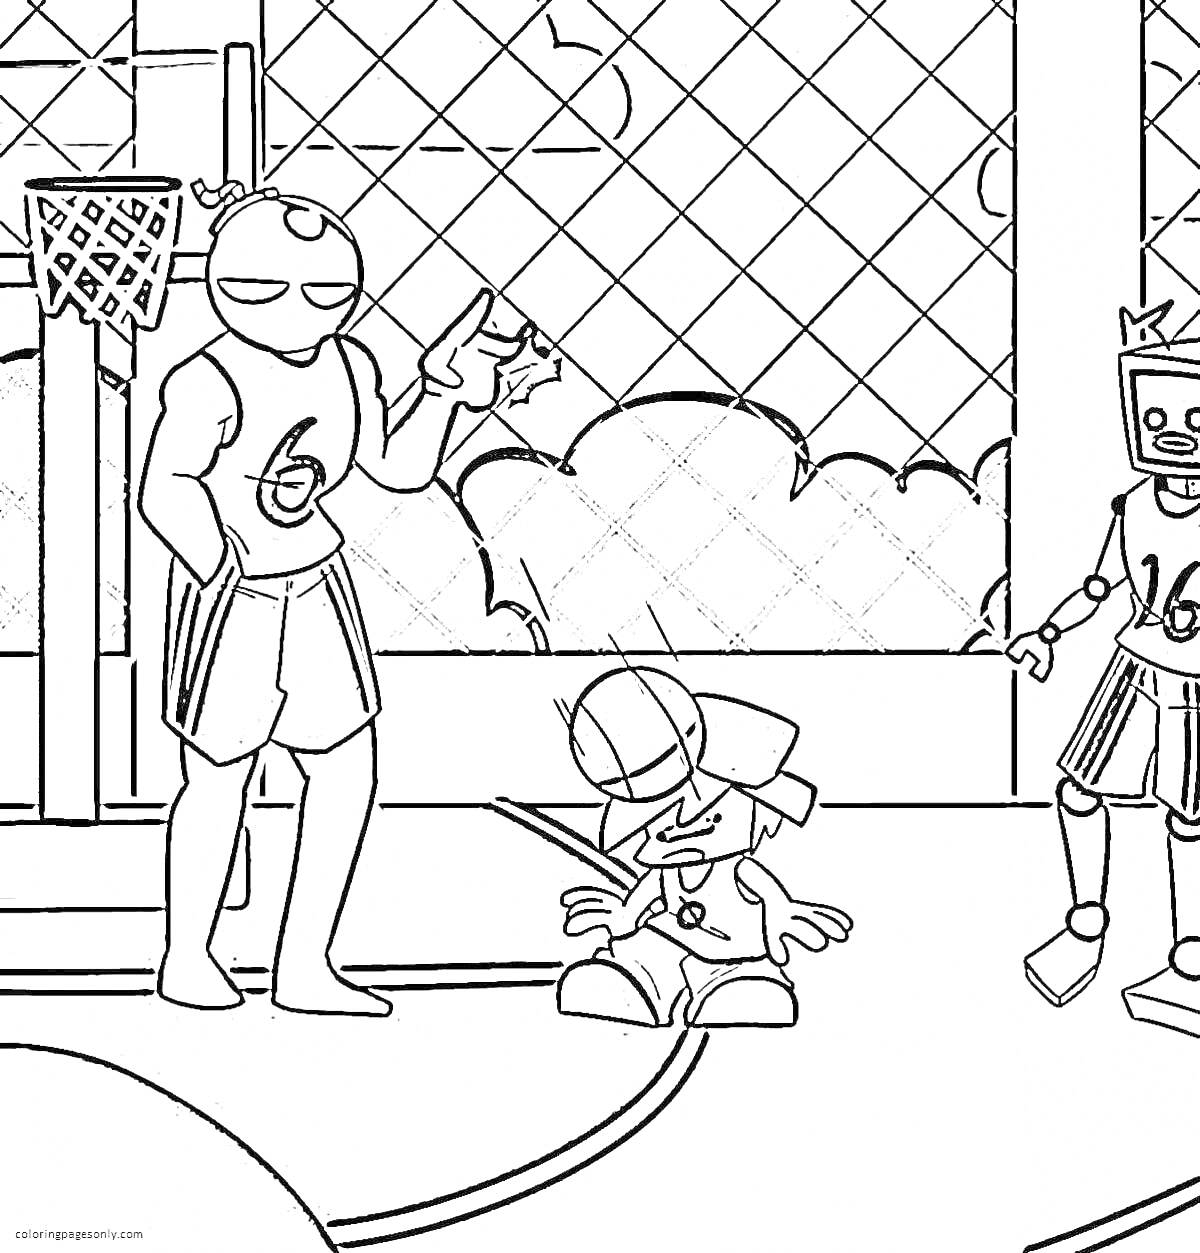 Раскраска Герои на баскетбольной площадке: робот, мальчик, баскетболист